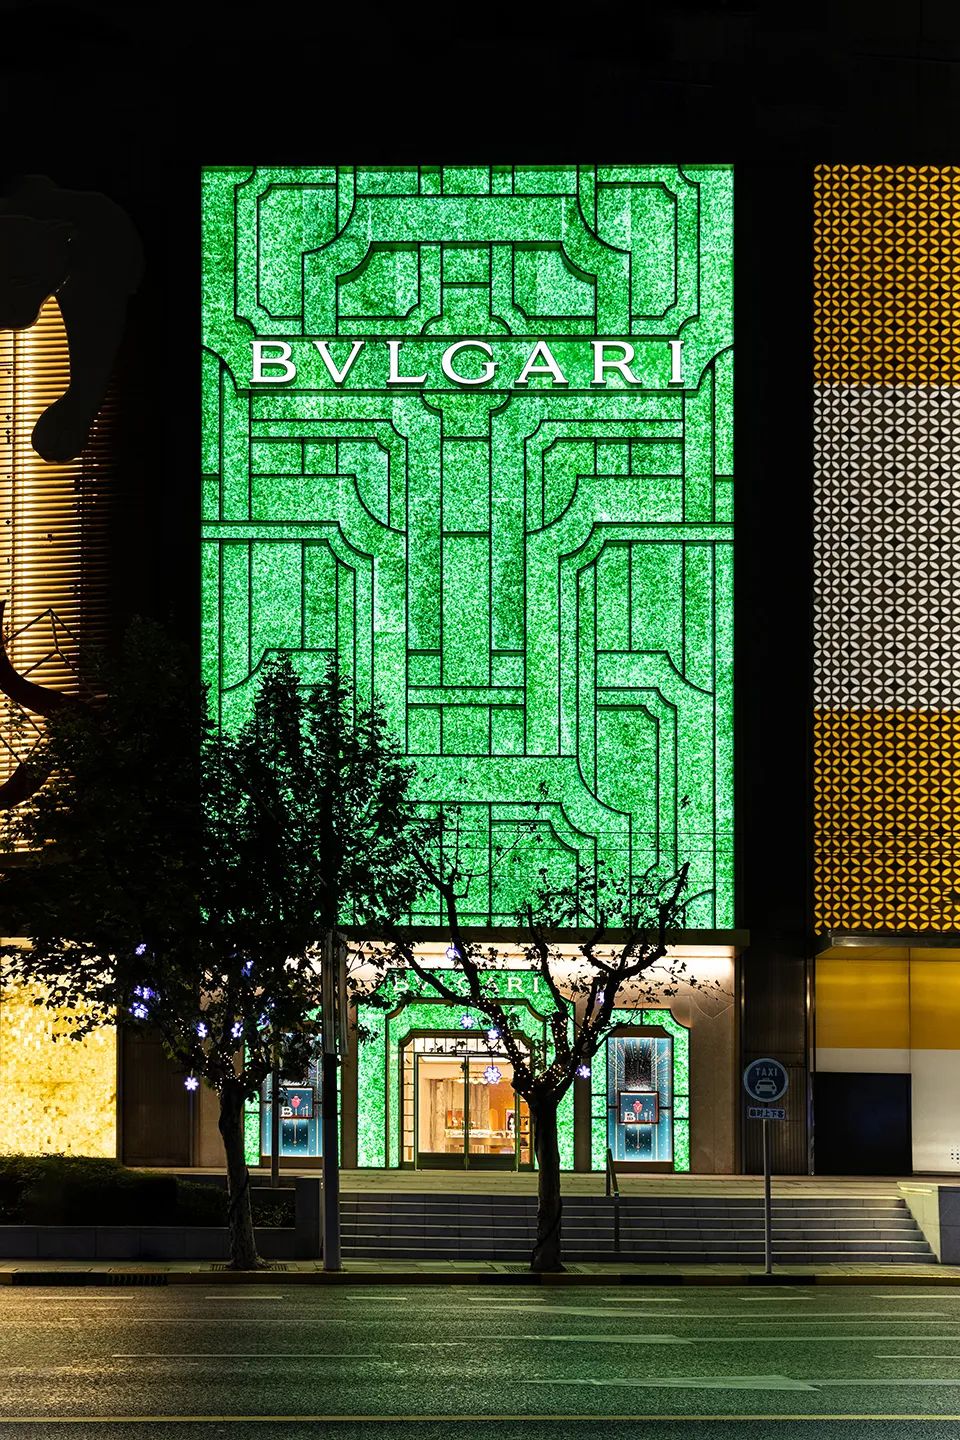 立面夜間景觀© 寶格麗 Bulgari facade night view 寶格麗上海旗艦店Bulgari Shanghai Plaza 66 Store／MVRDV